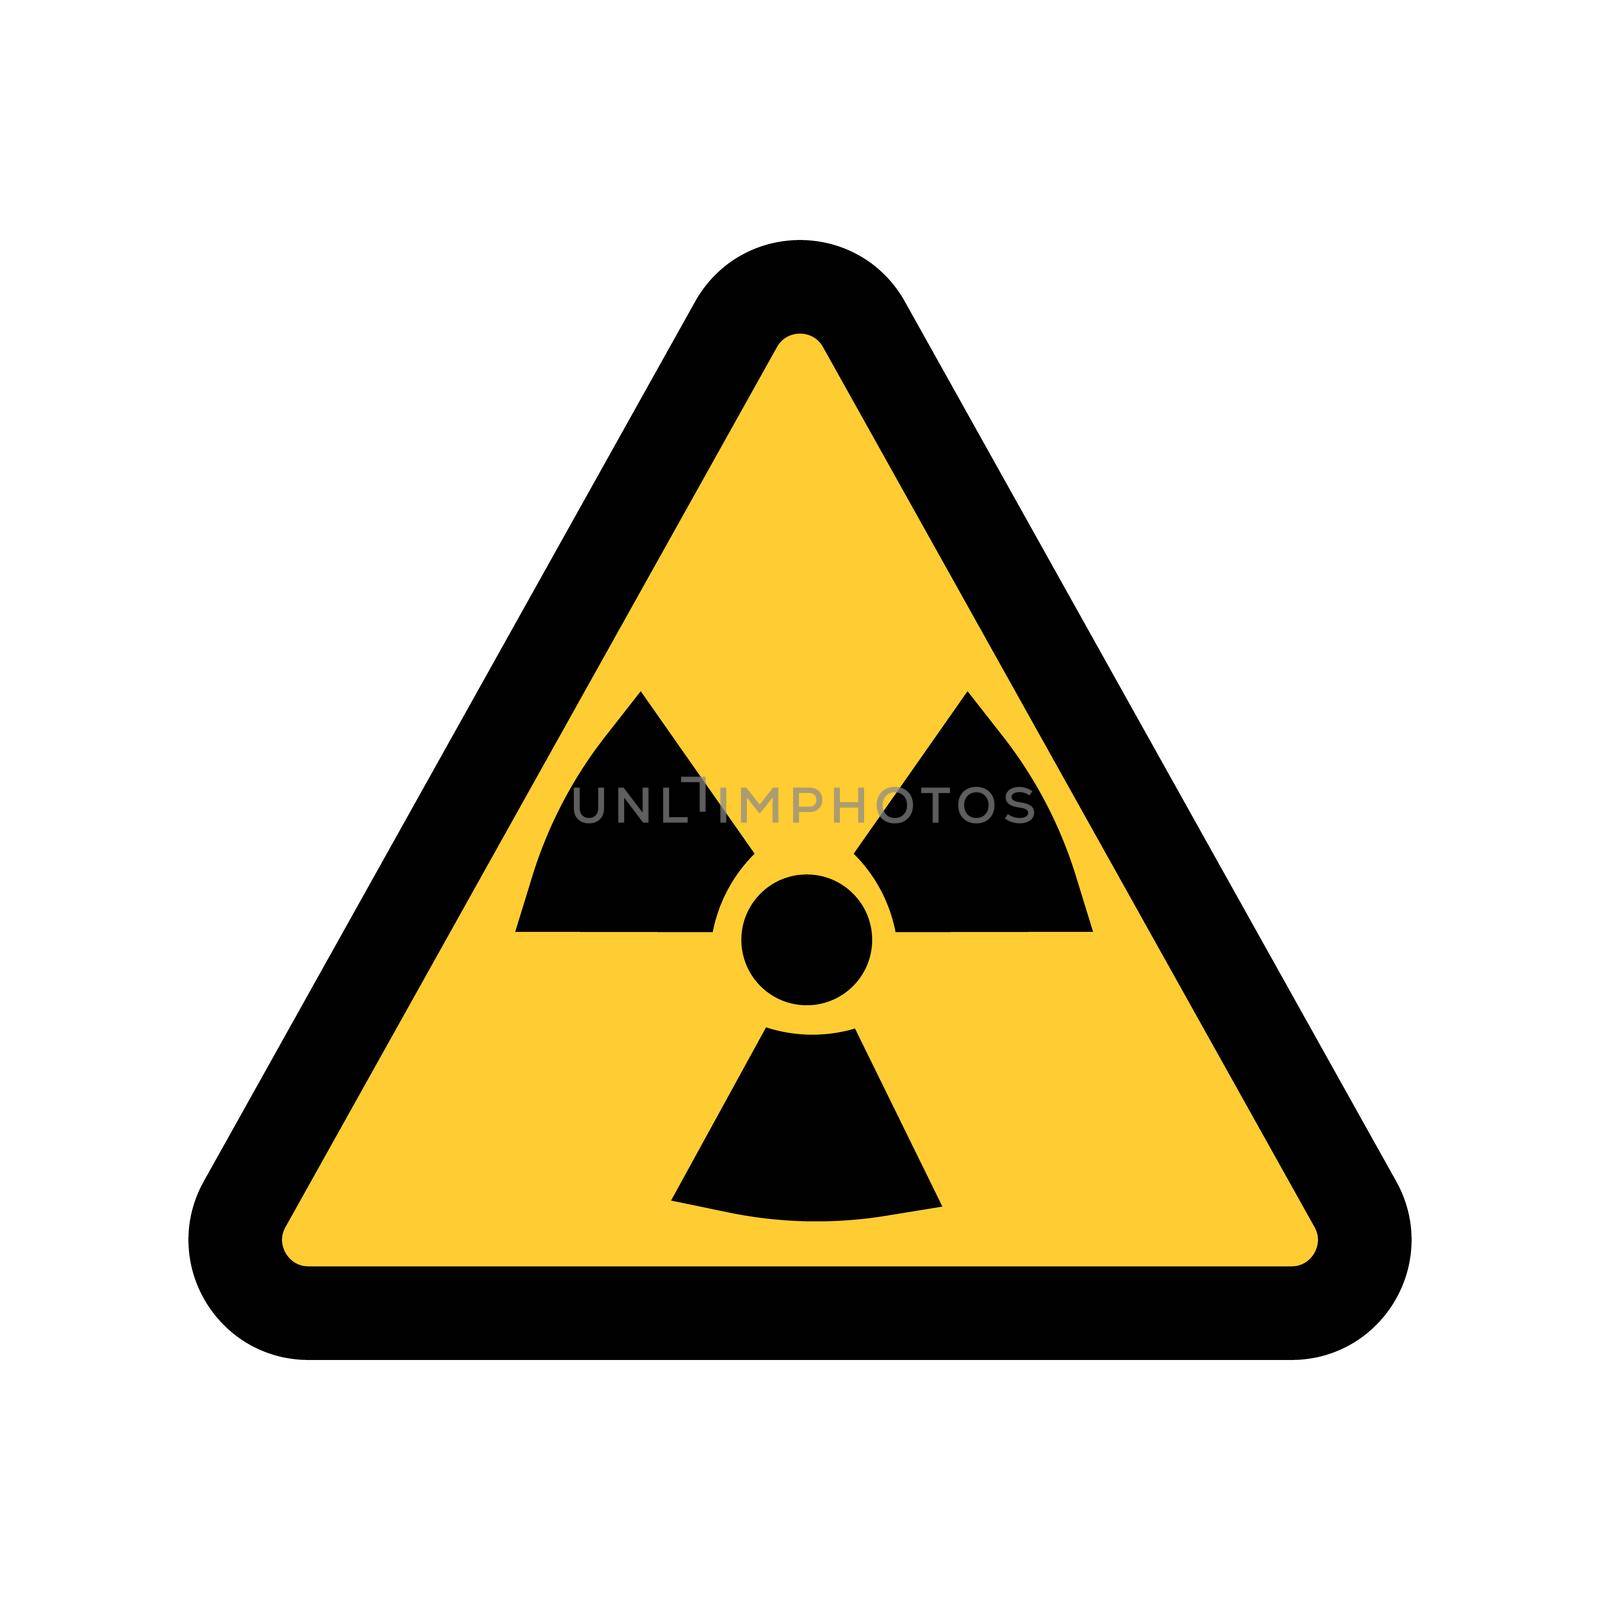 Radiation warning sign, isolated on white background illustration